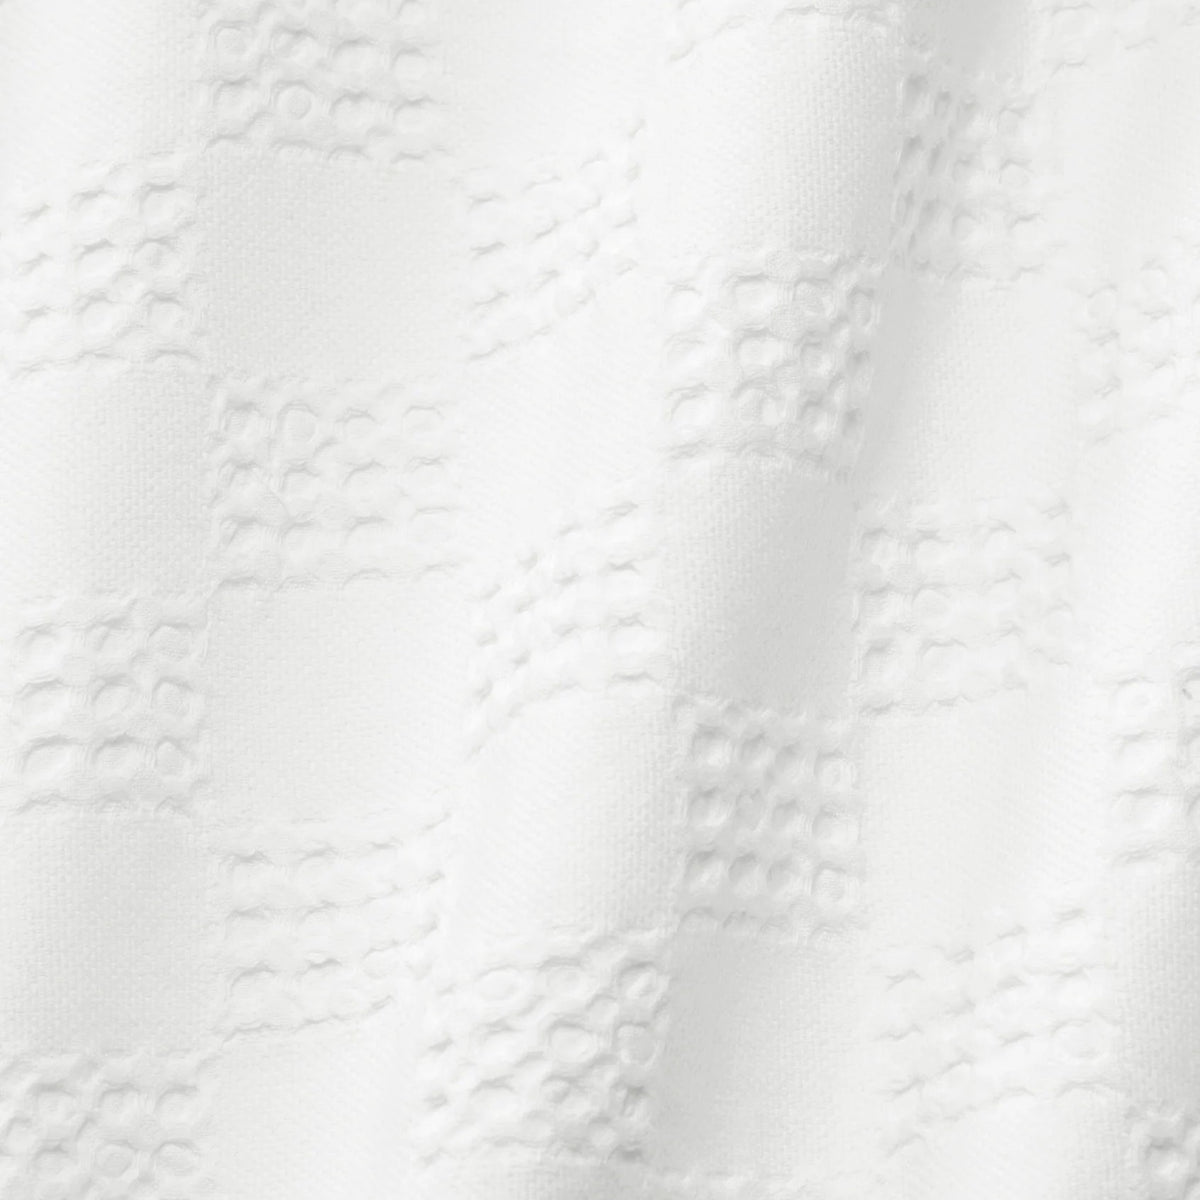 Swatch Sample of Sferra Straccio Kitchen Towel in White Color